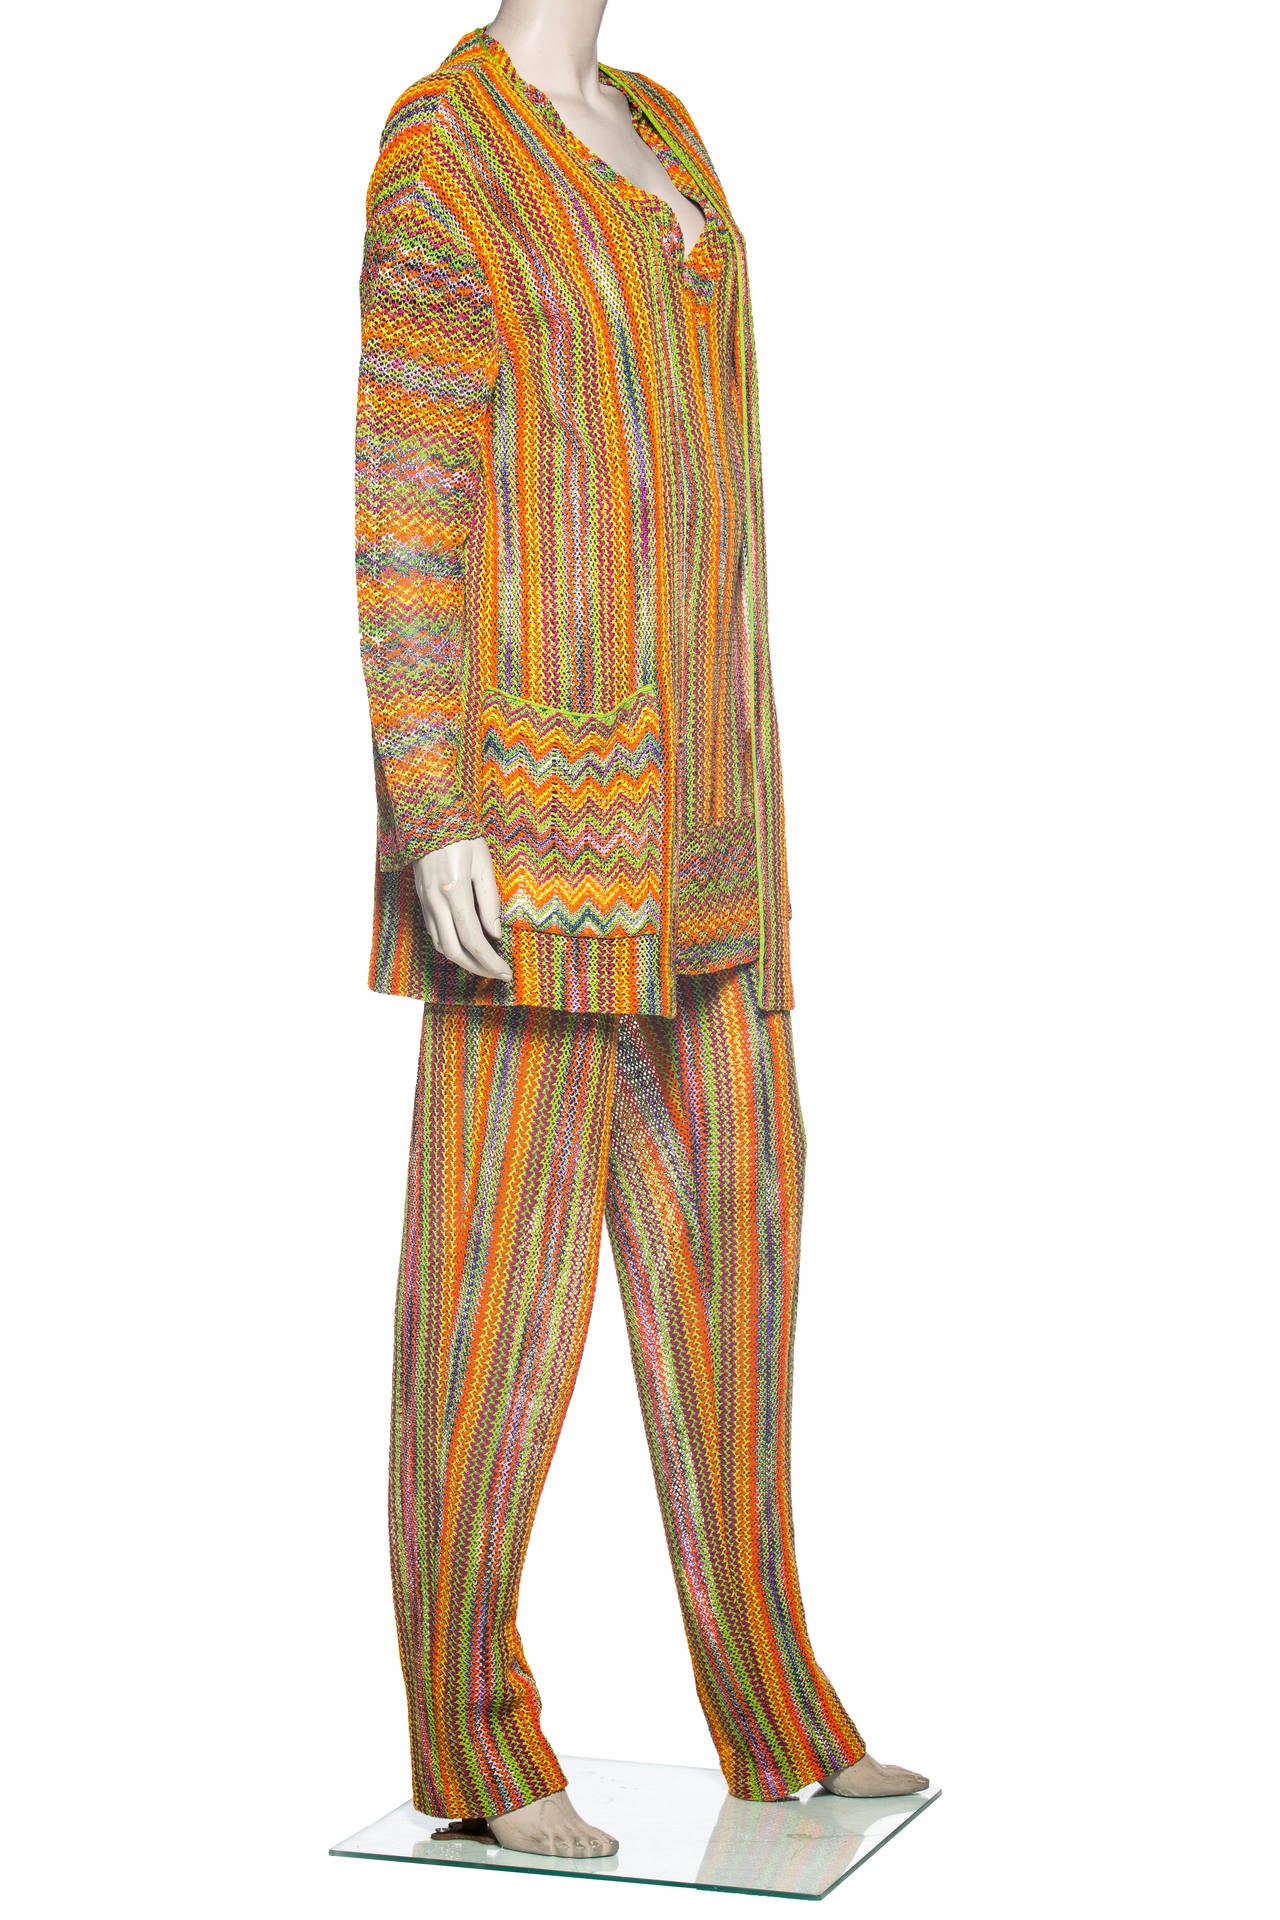 rainbow pant suit